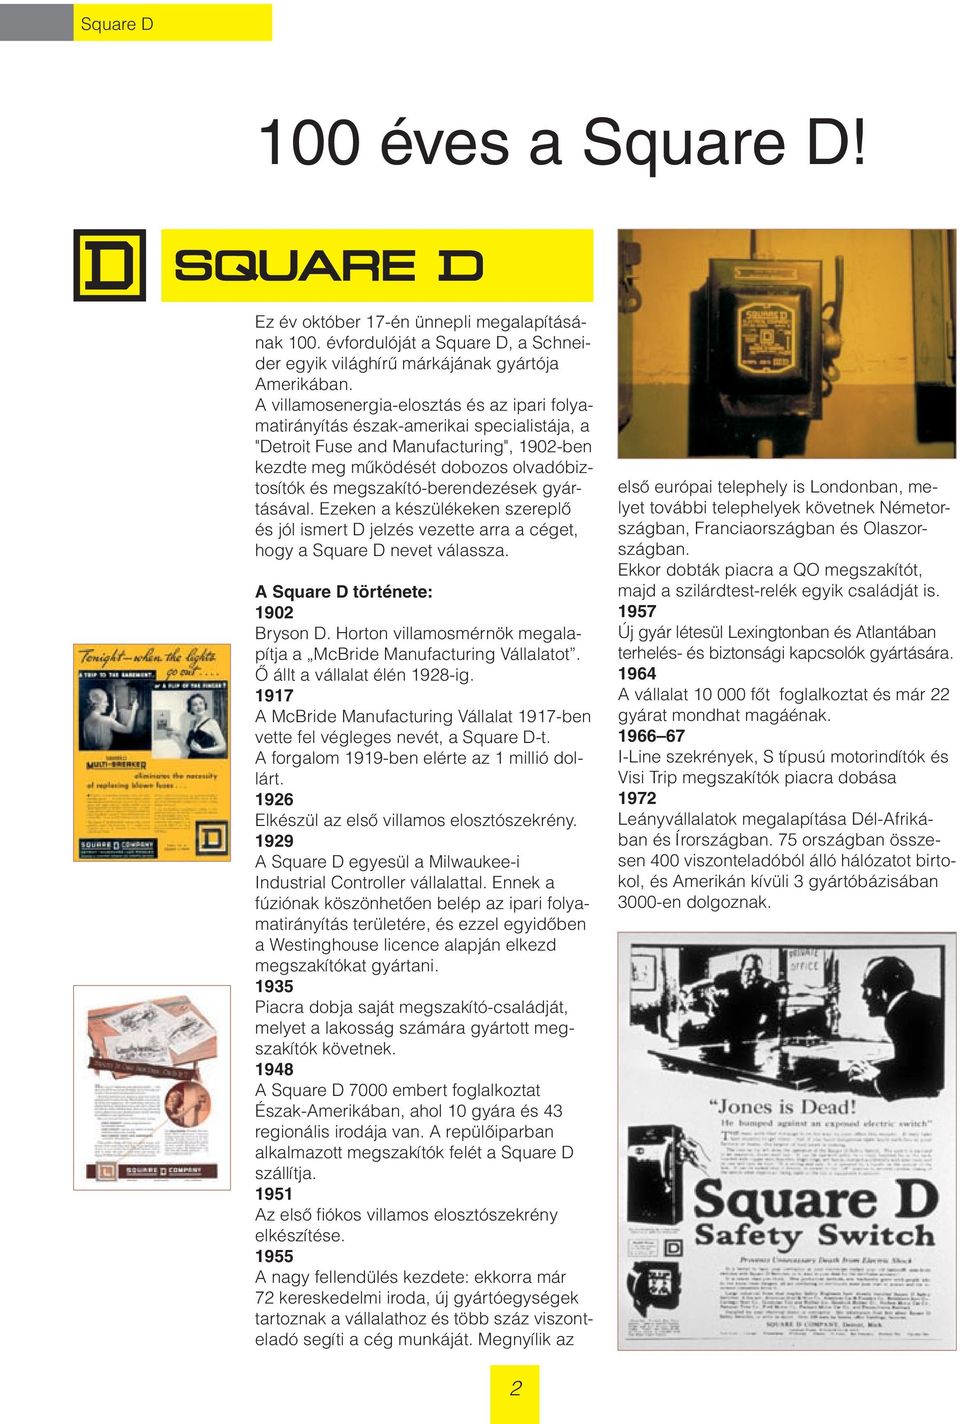 megszakító-berendezések gyártásával. Ezeken a készülékeken szereplô és jól ismert D jelzés vezette arra a céget, hogy a Square D nevet válassza. A Square D története: 1902 Bryson D.